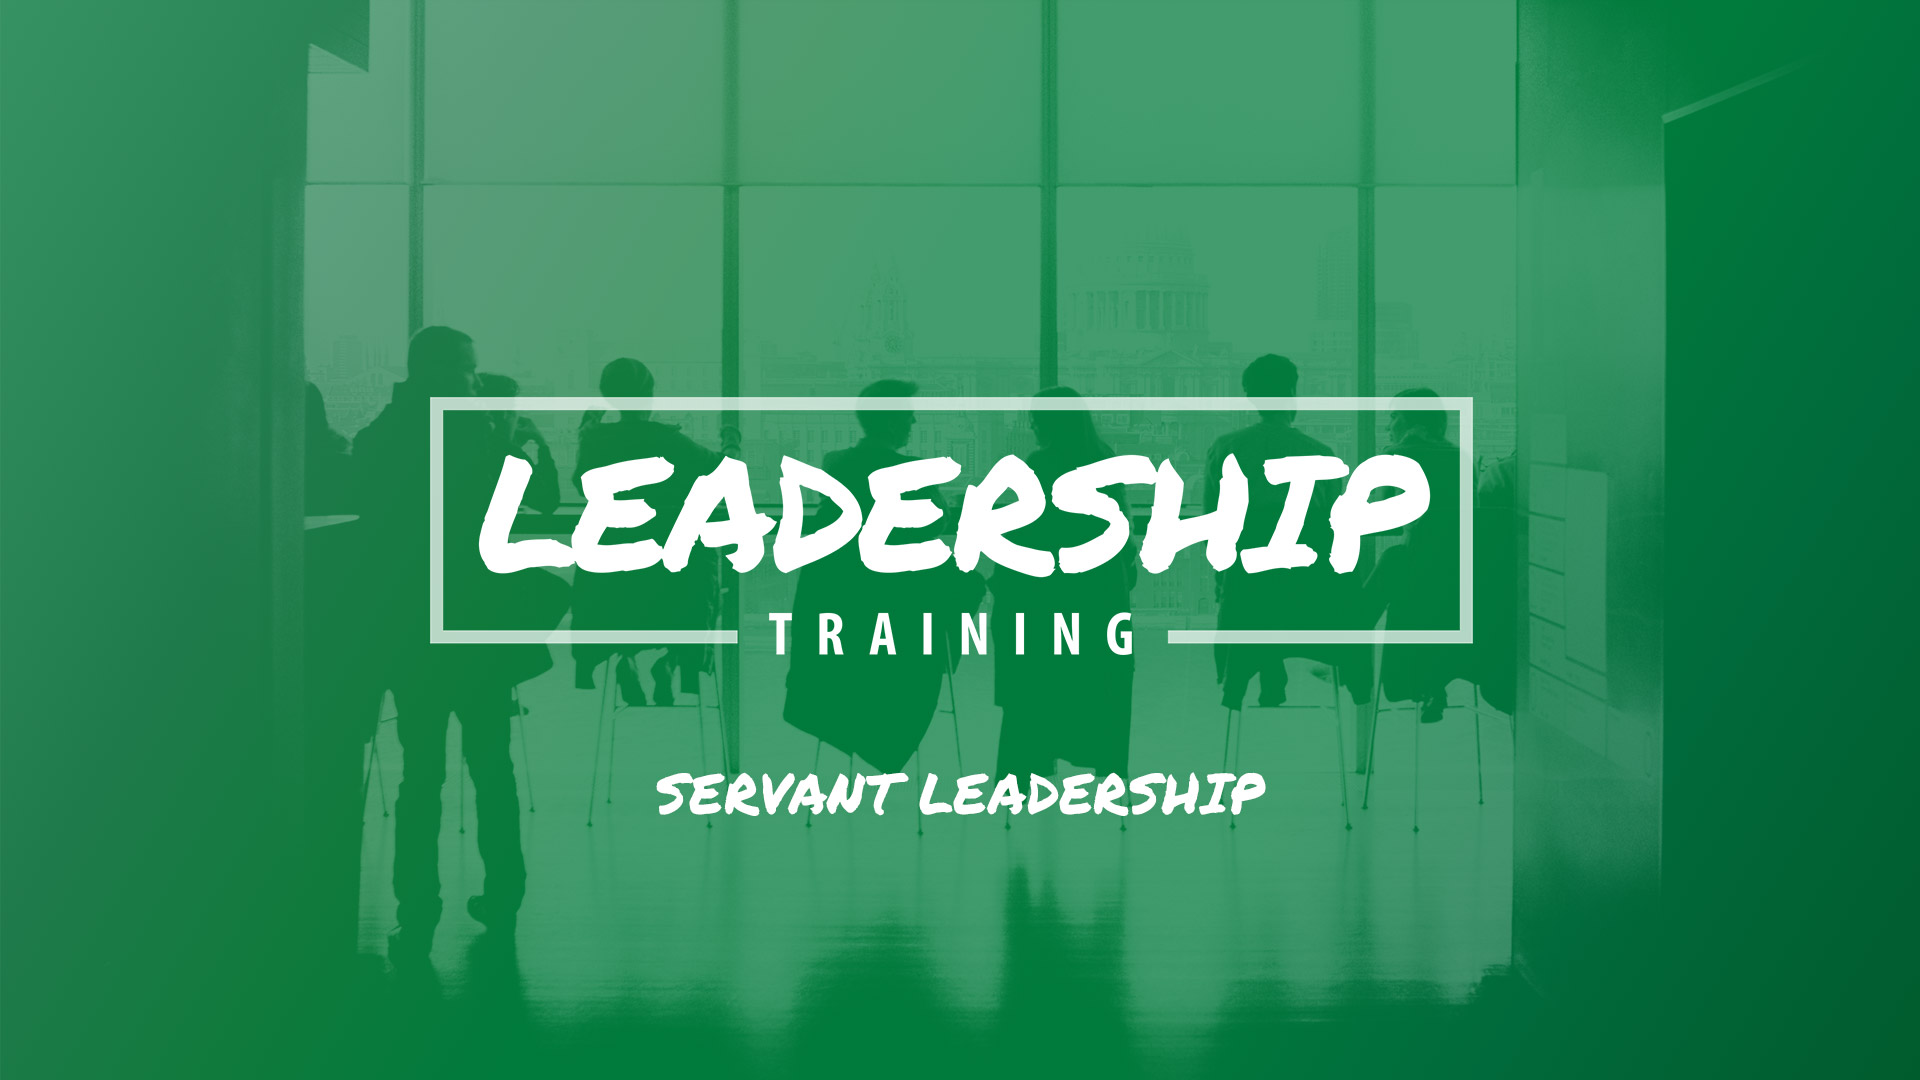 Leadership Training: Servant Leadership